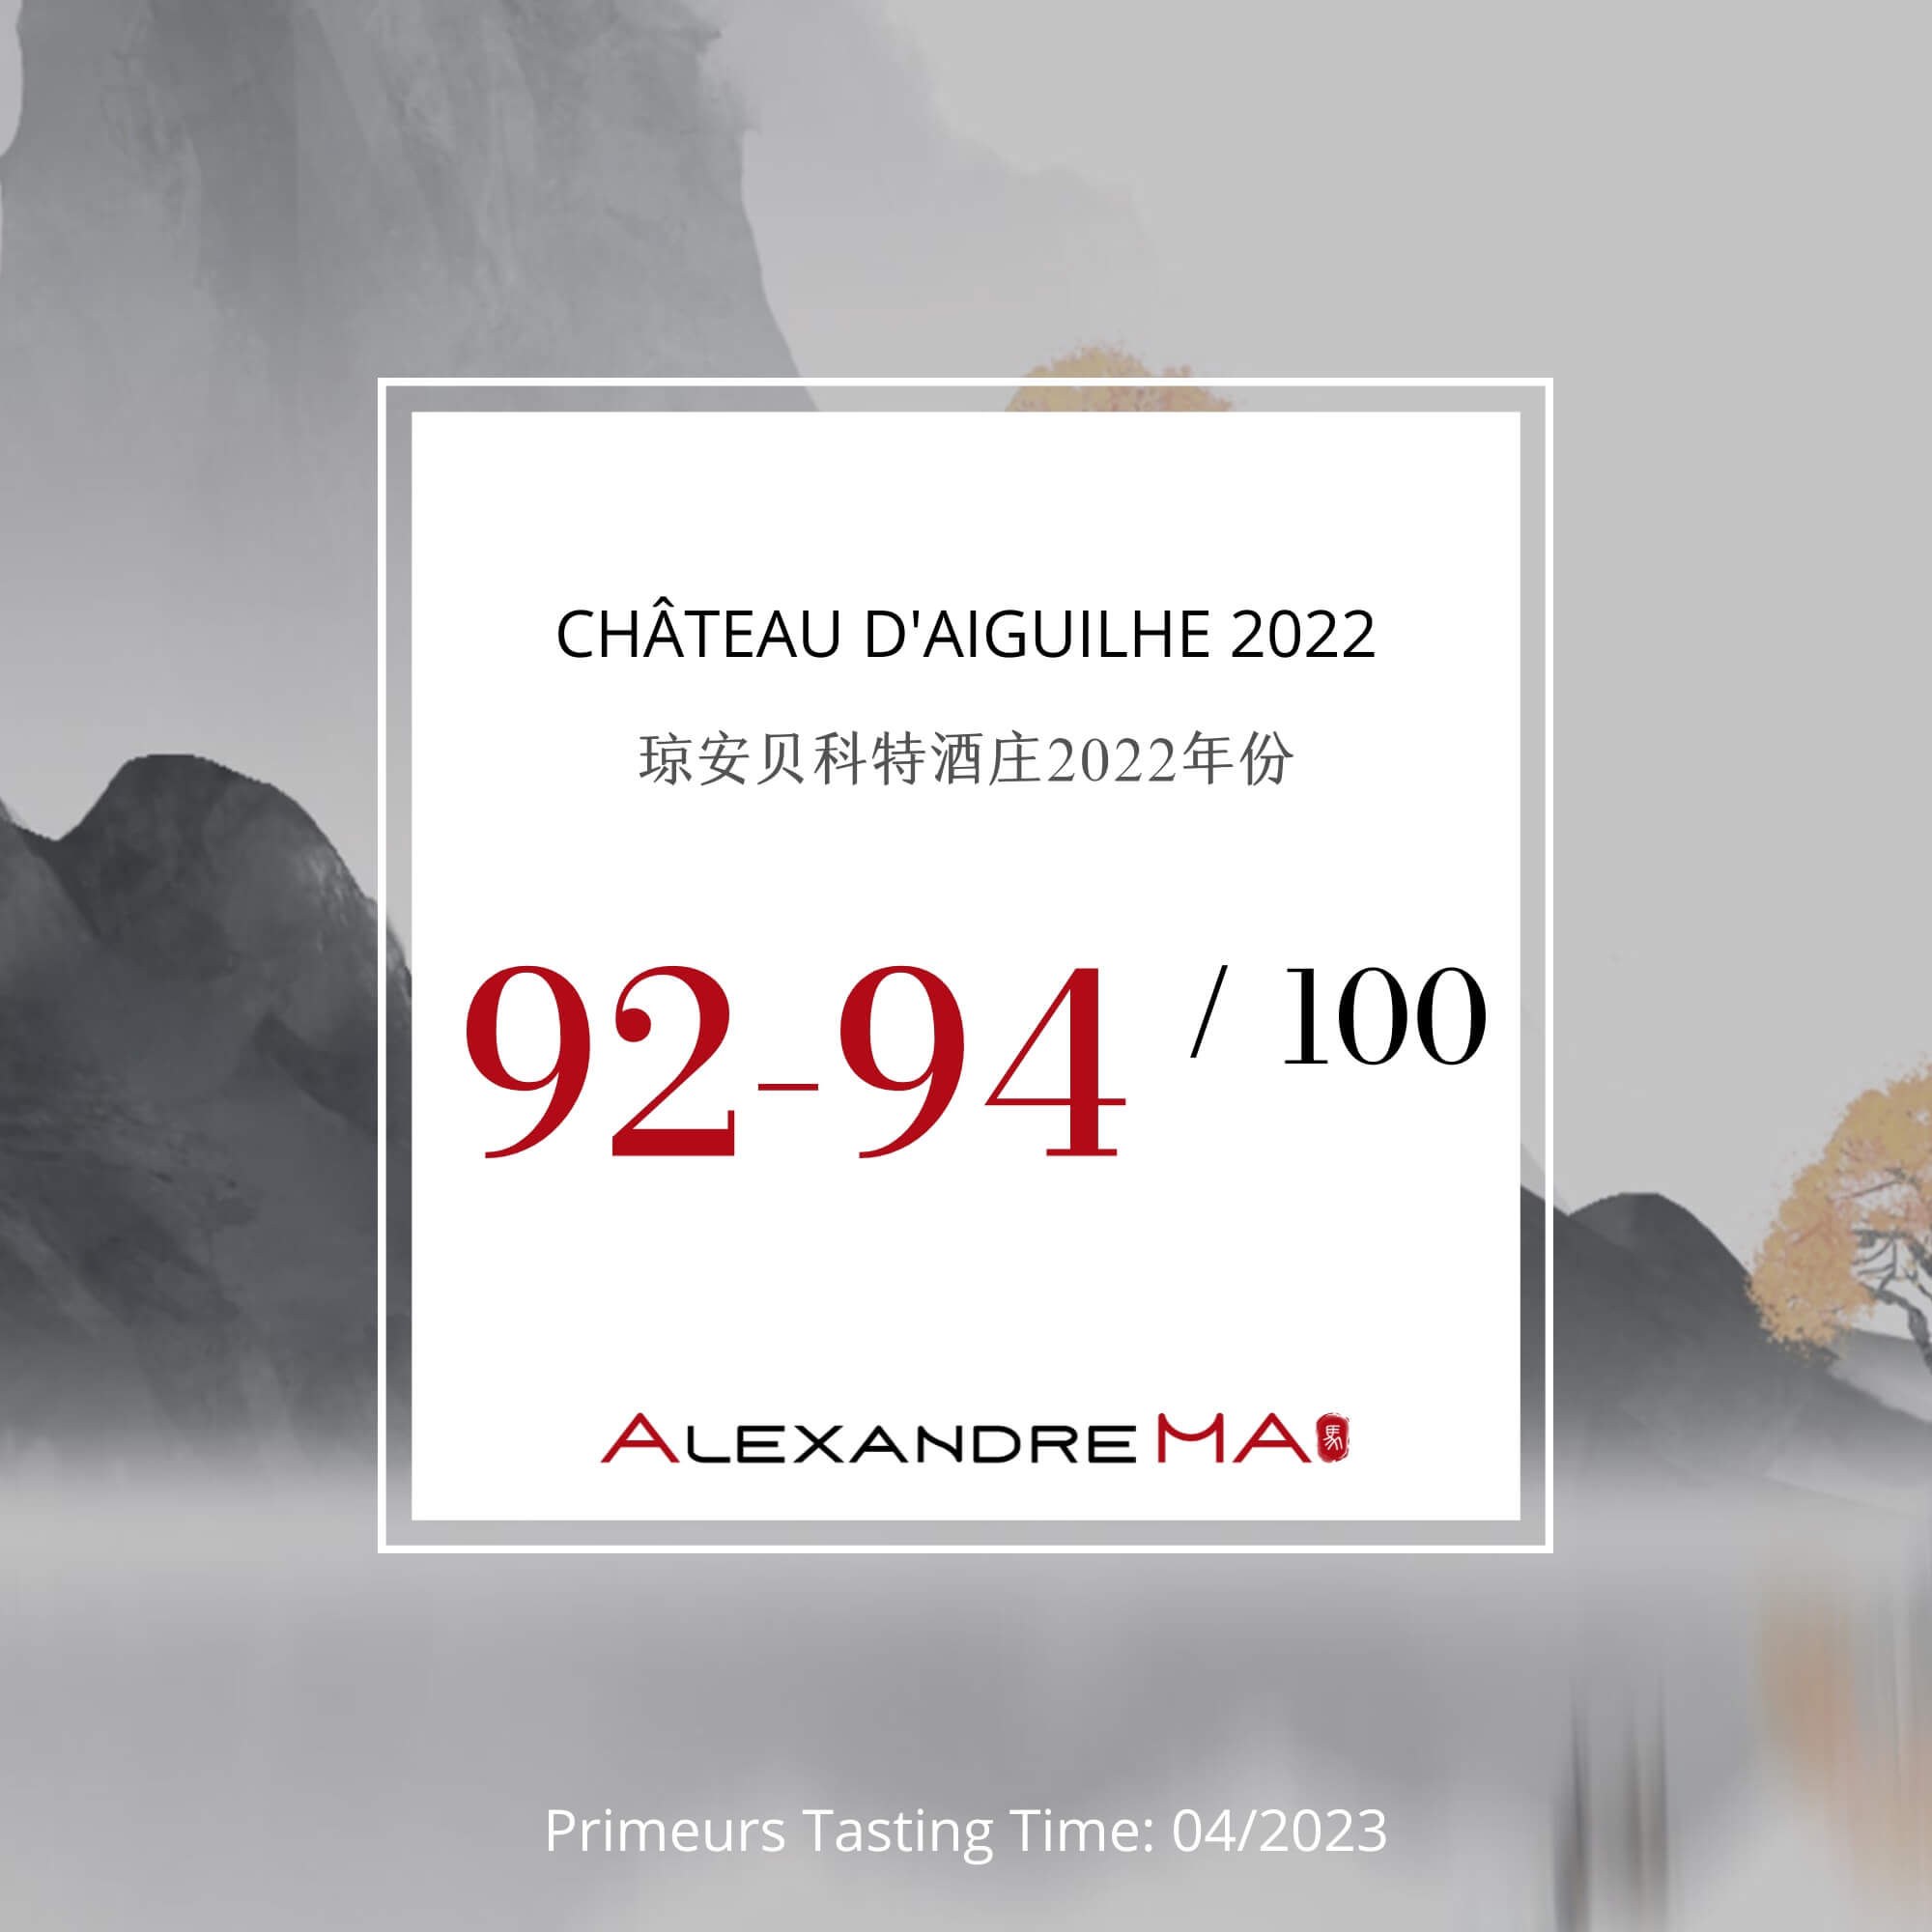 Château d’Aiguilhe 2022 Primeurs - Alexandre MA